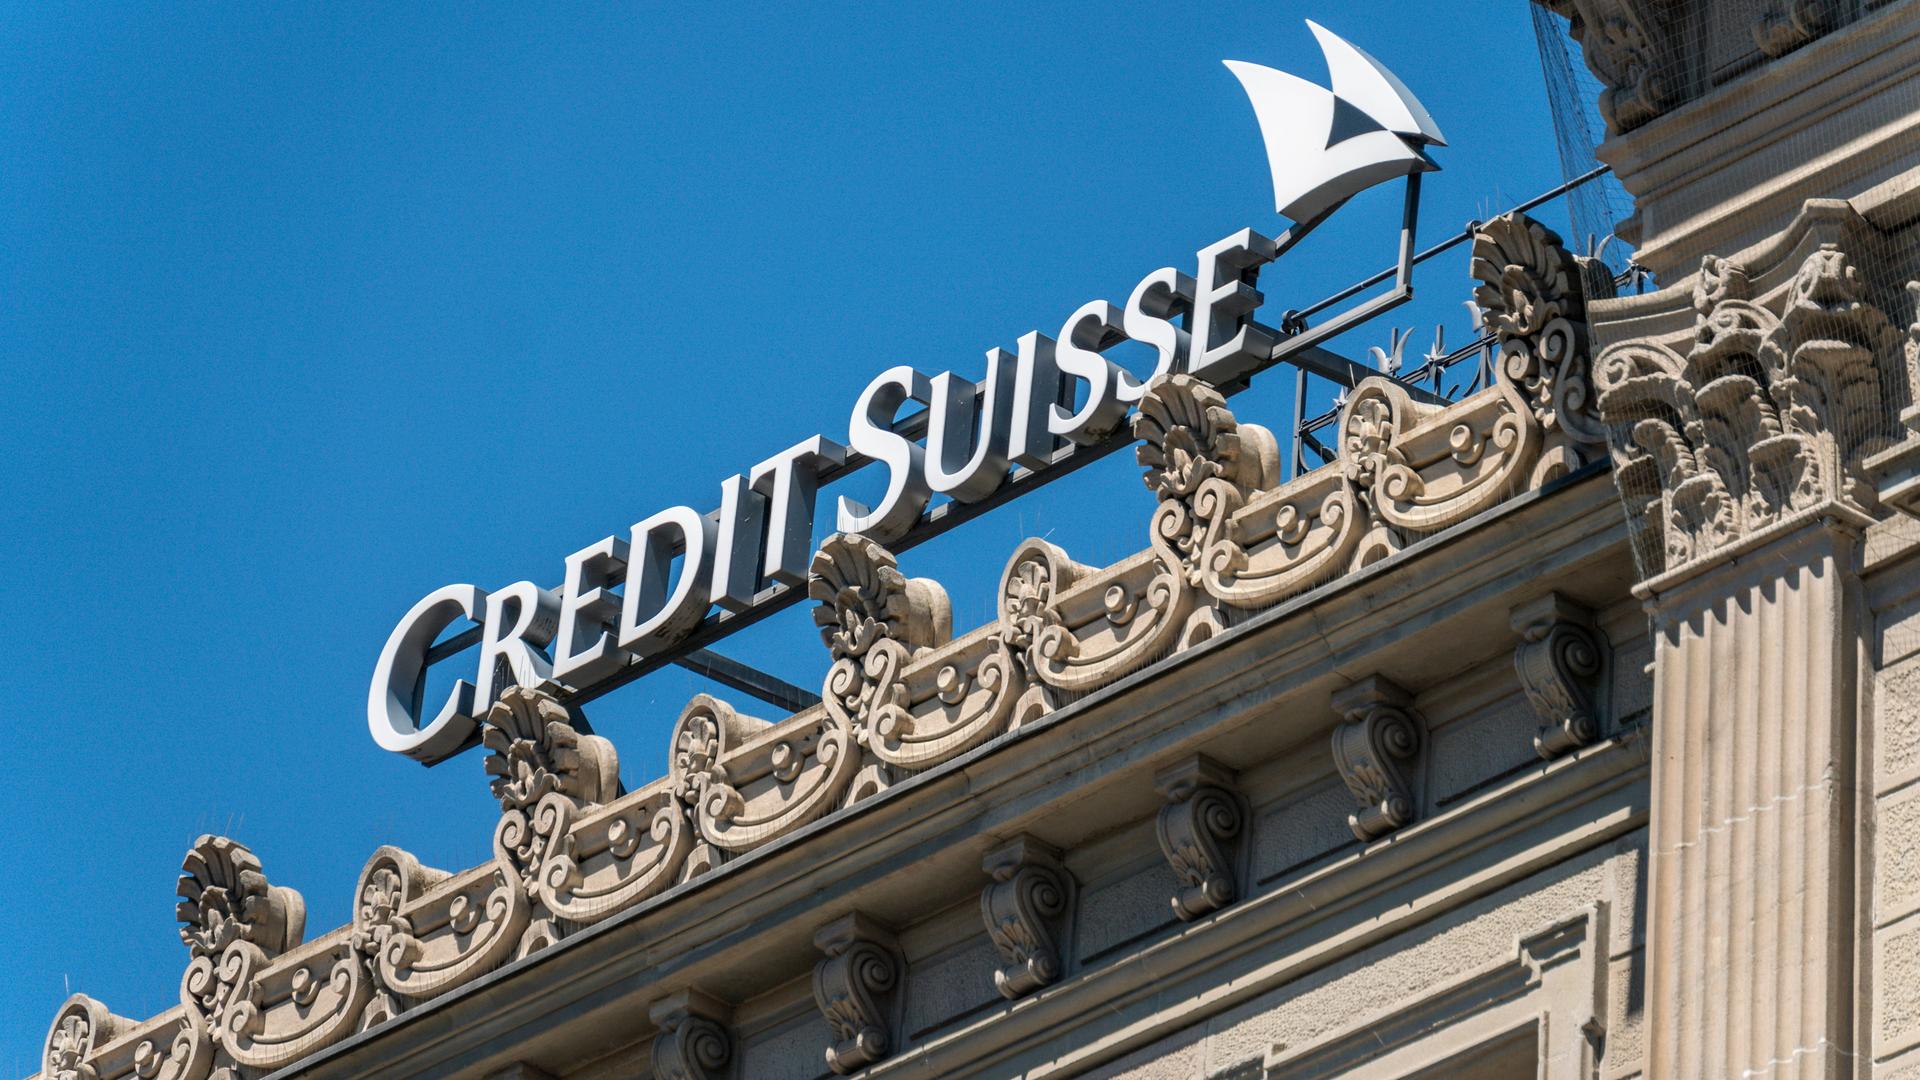 Logo der Schweizer Großbank Credit Suissse an einem klassizistischen Gebäude